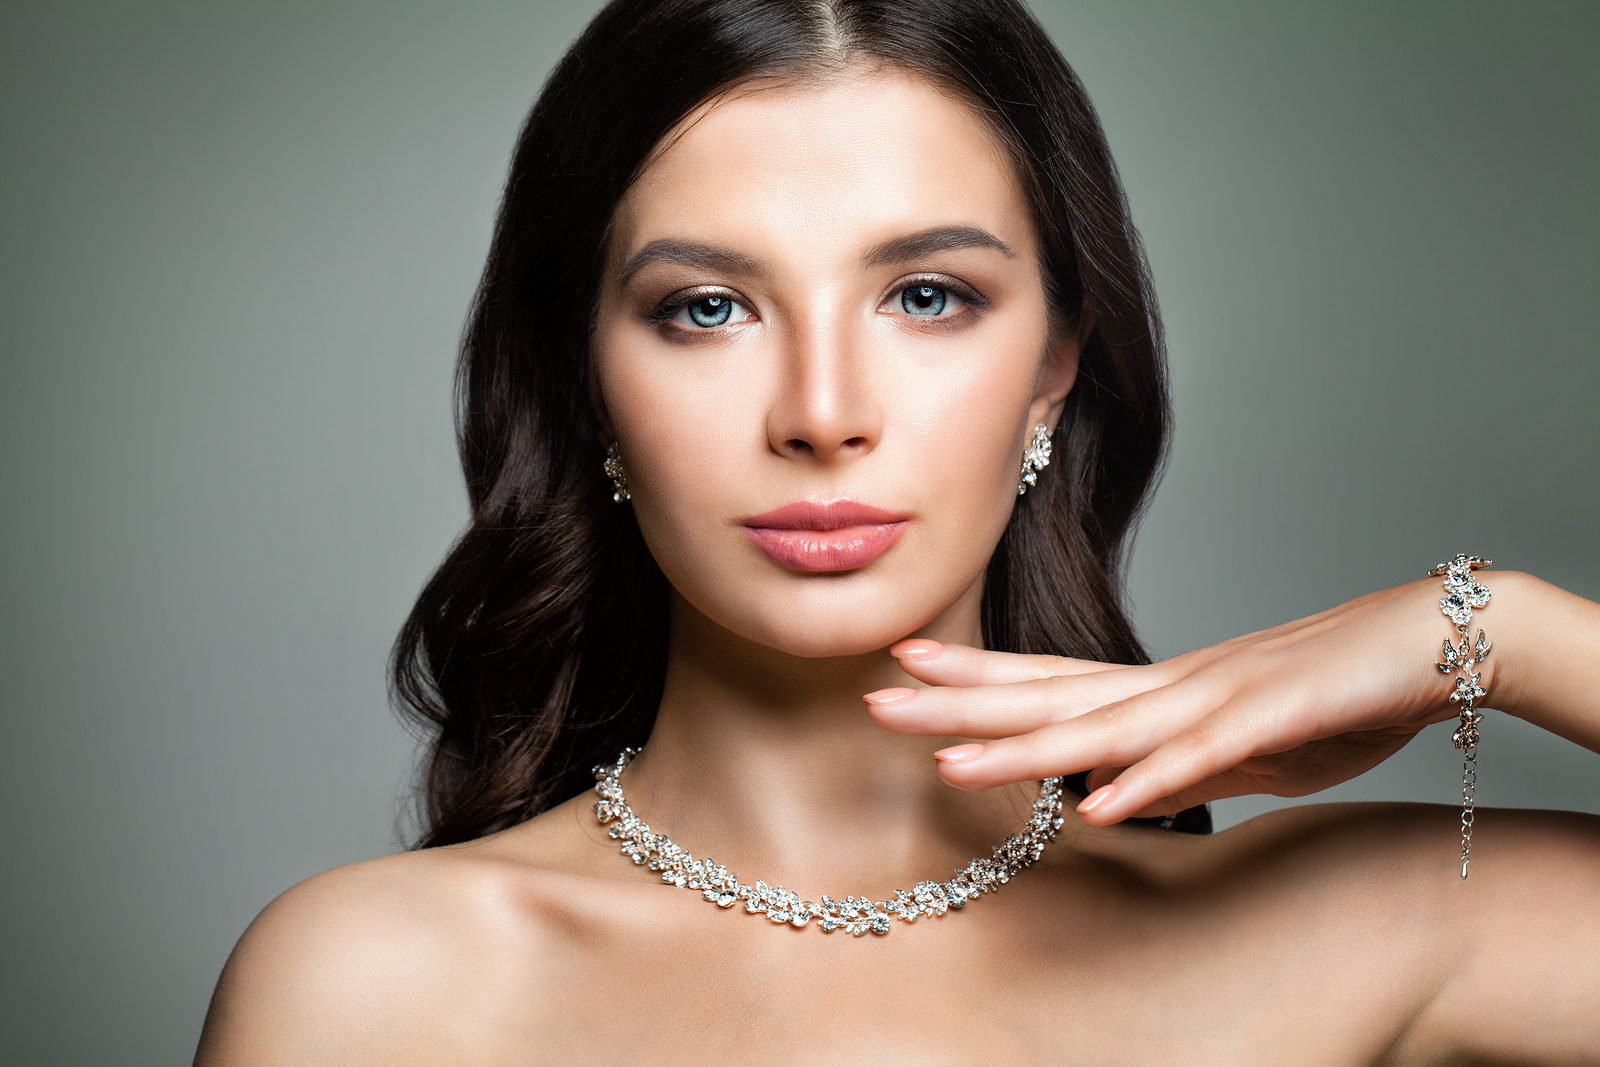 A woman wearing beautiful diamond jewellery